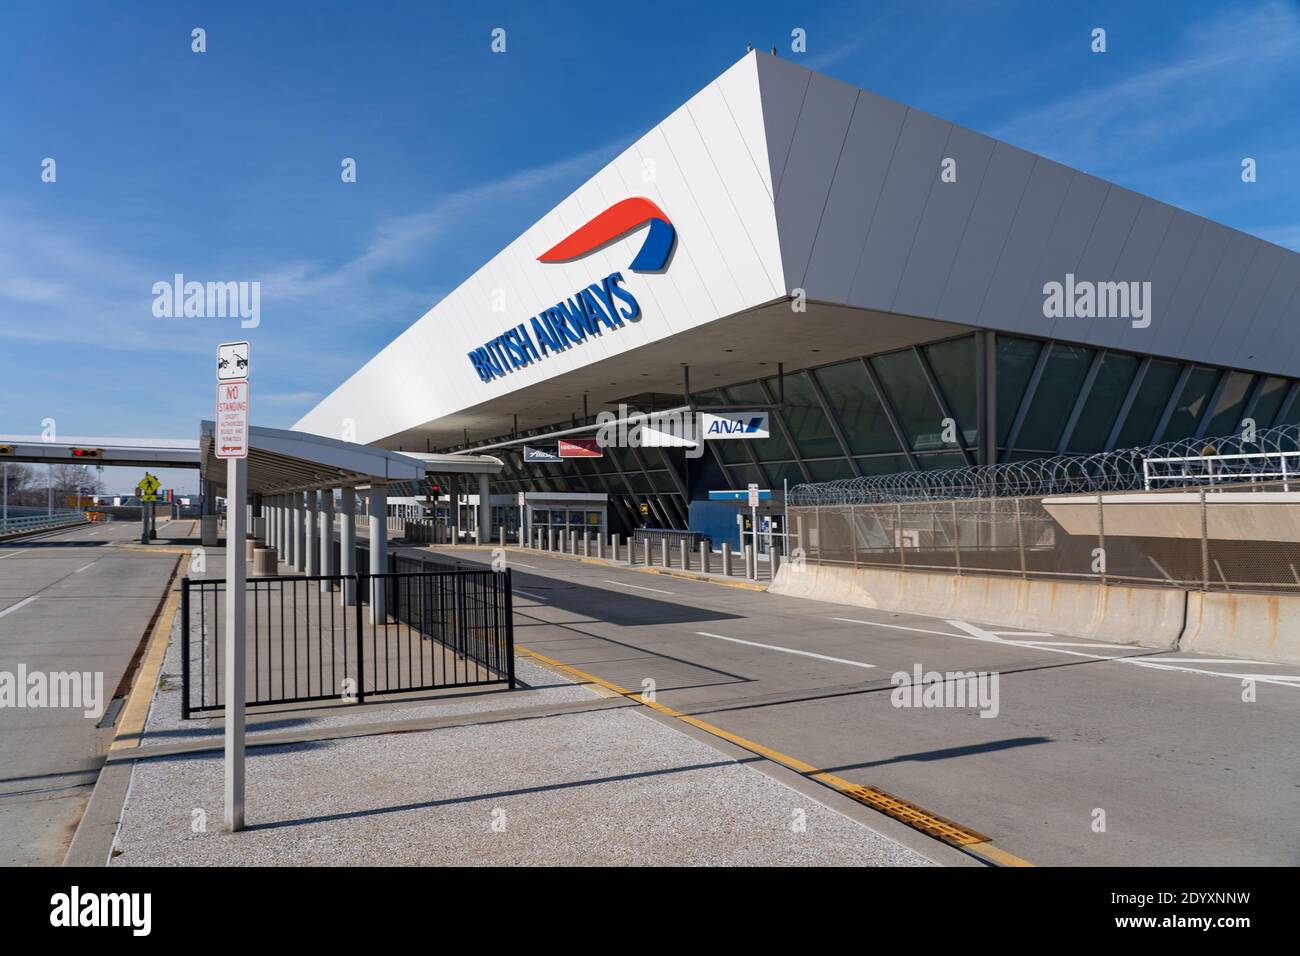 NUEVA YORK, NY – 27 DE DICIEMBRE de 2020: El logotipo de British Airways se ve en la terminal 7 del Aeropuerto Internacional John F. Kennedy (JFK). Foto de stock